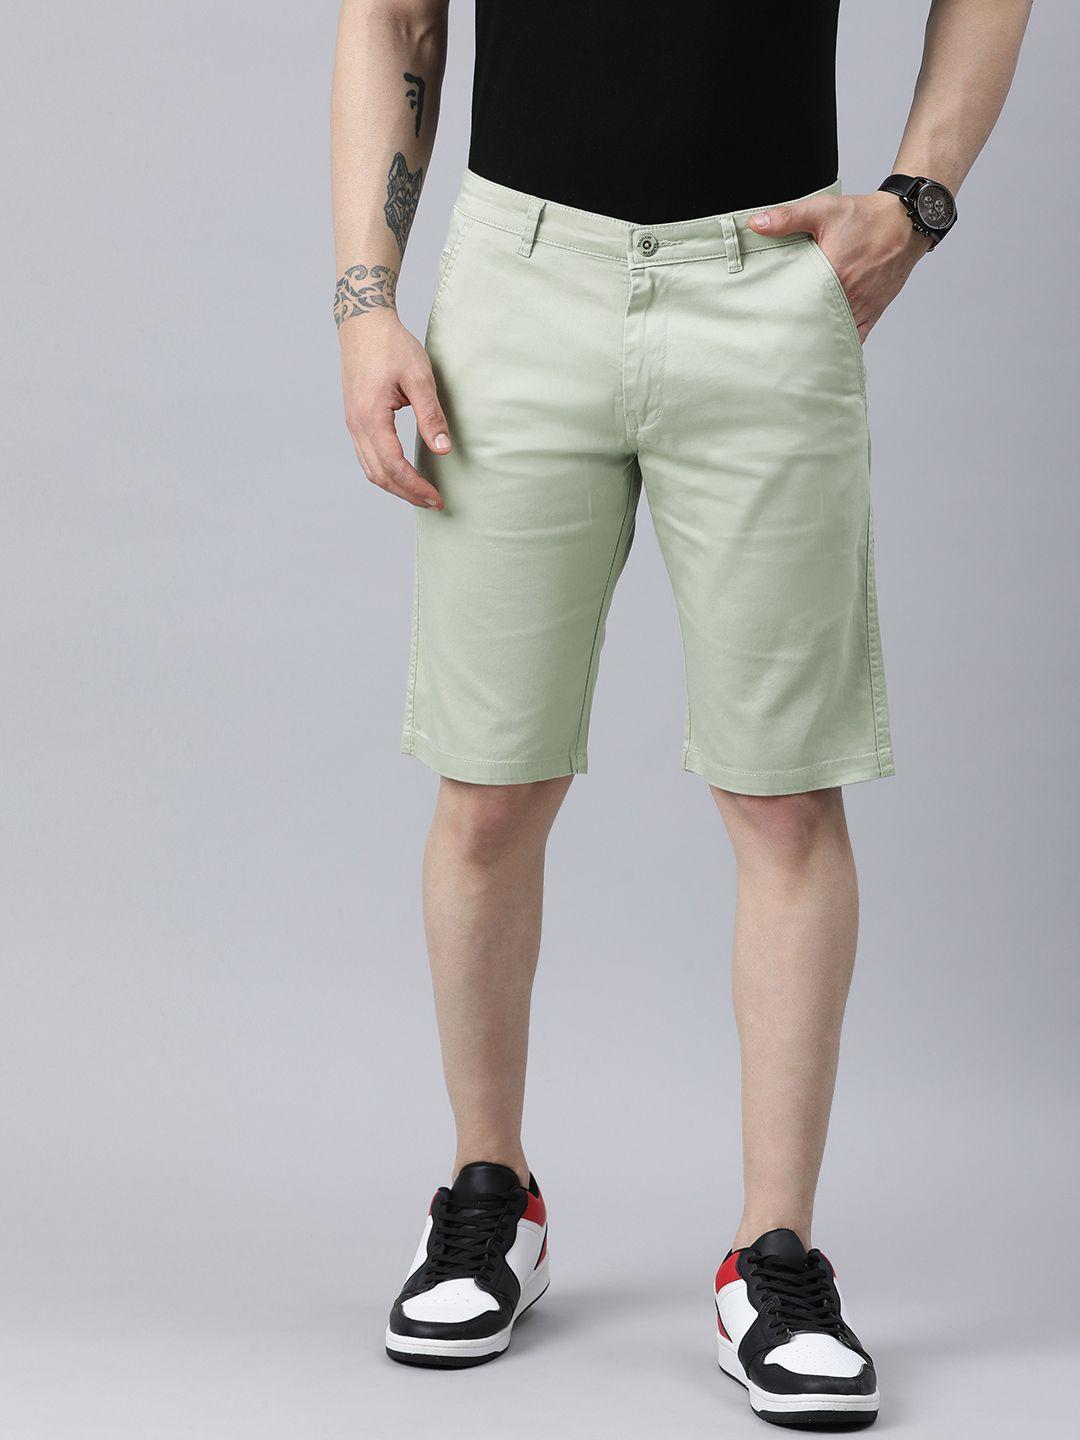 adbucks men regular fit chino shorts